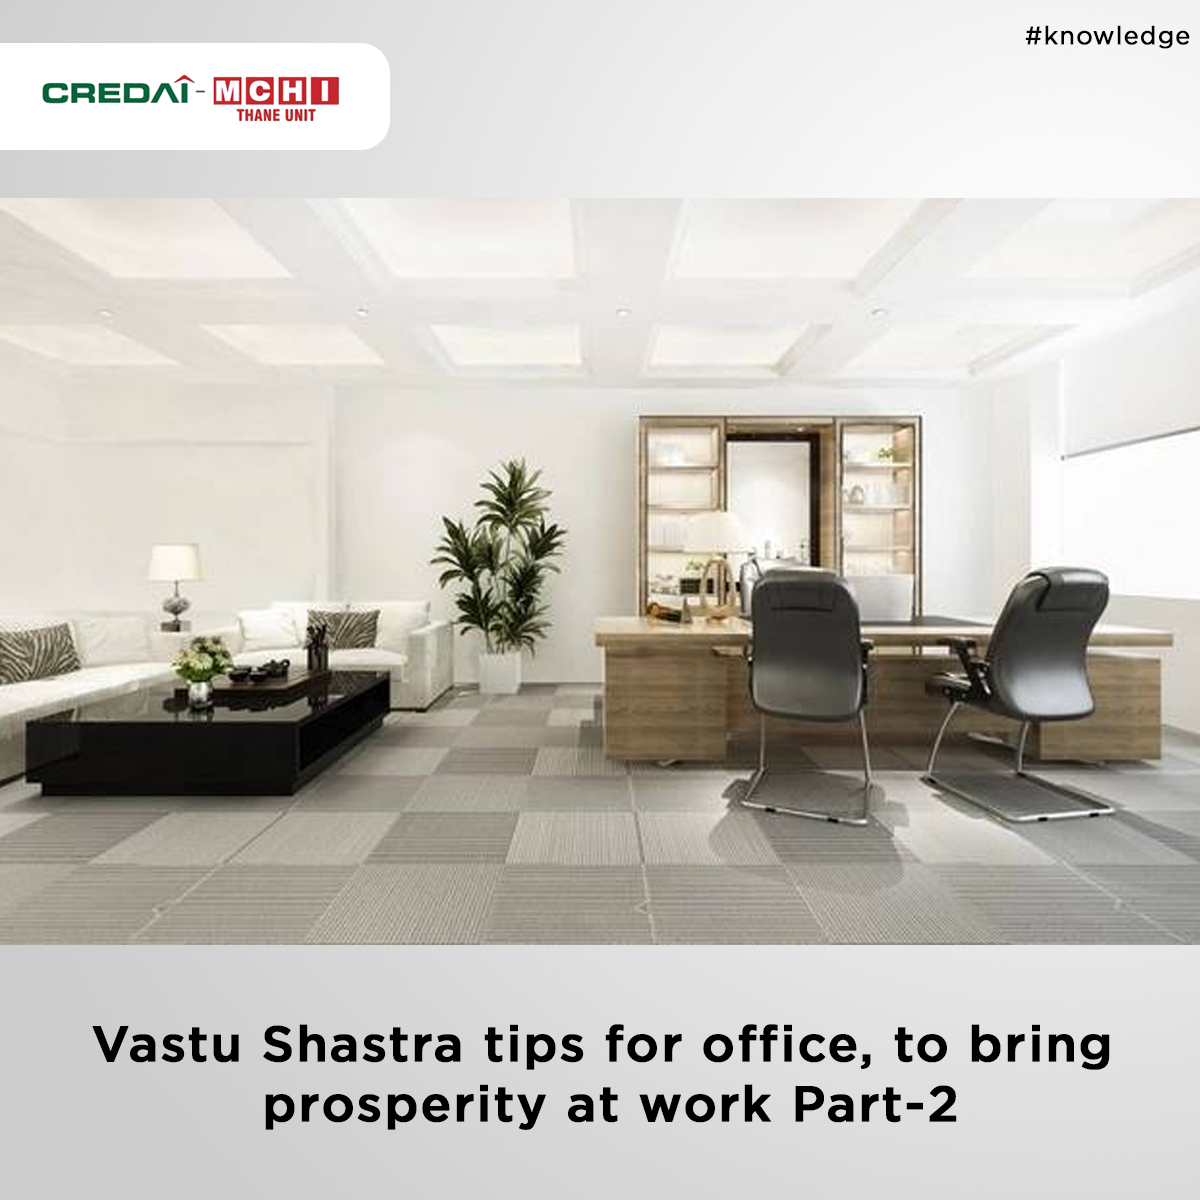 Vastu Shastra Tips For Office, To Bring Prosperity At Work Part-2

To Read: bit.ly/32UwxSu

#CREDAI #MCHI #CREDAIMCHI #MCHIThane #vastushastratips